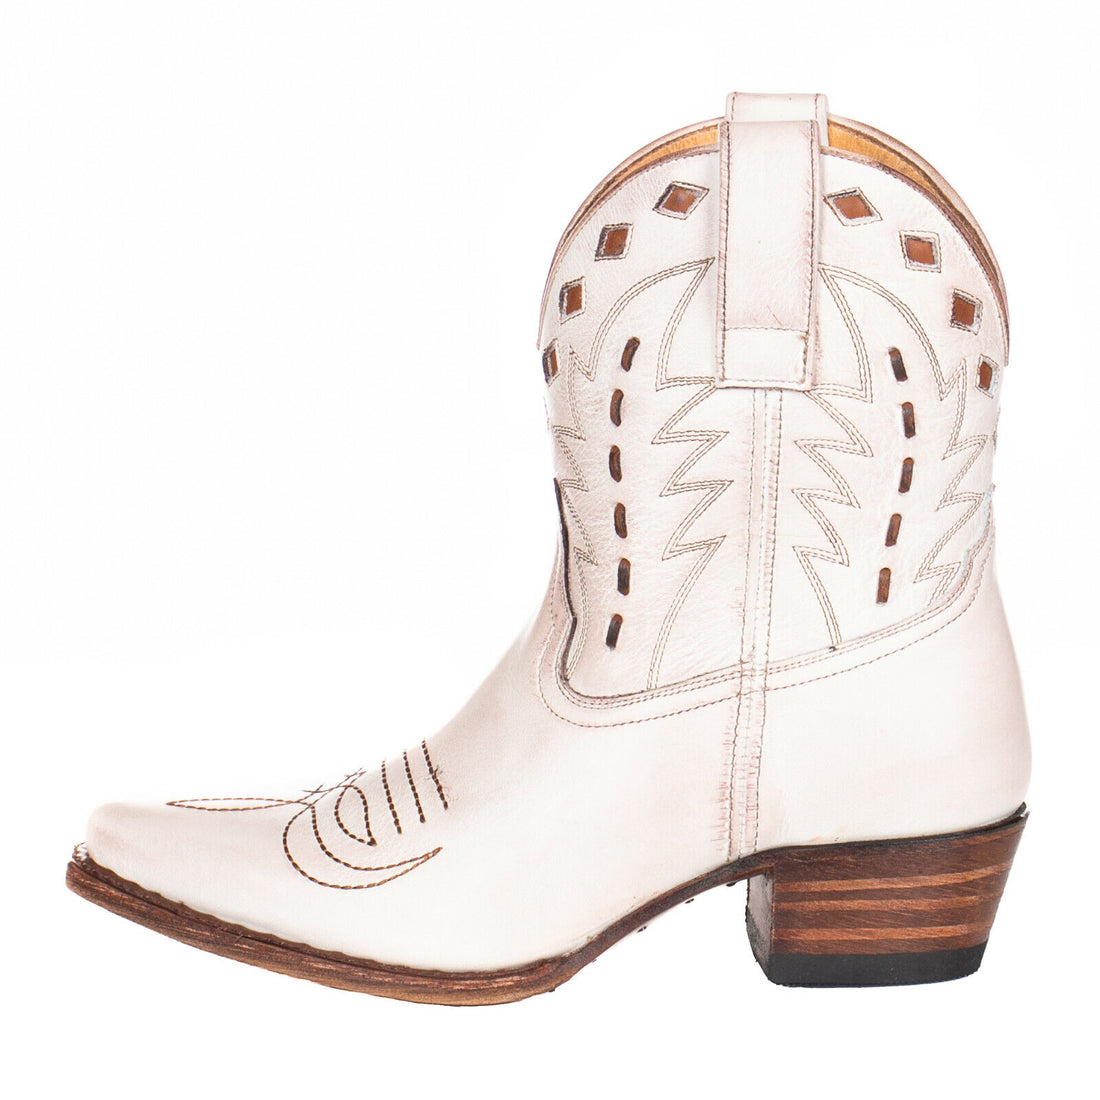 Sendra Boots 17156 Salvaje Suave Cowboy Western Stiefelette Bootie Damen Weiß